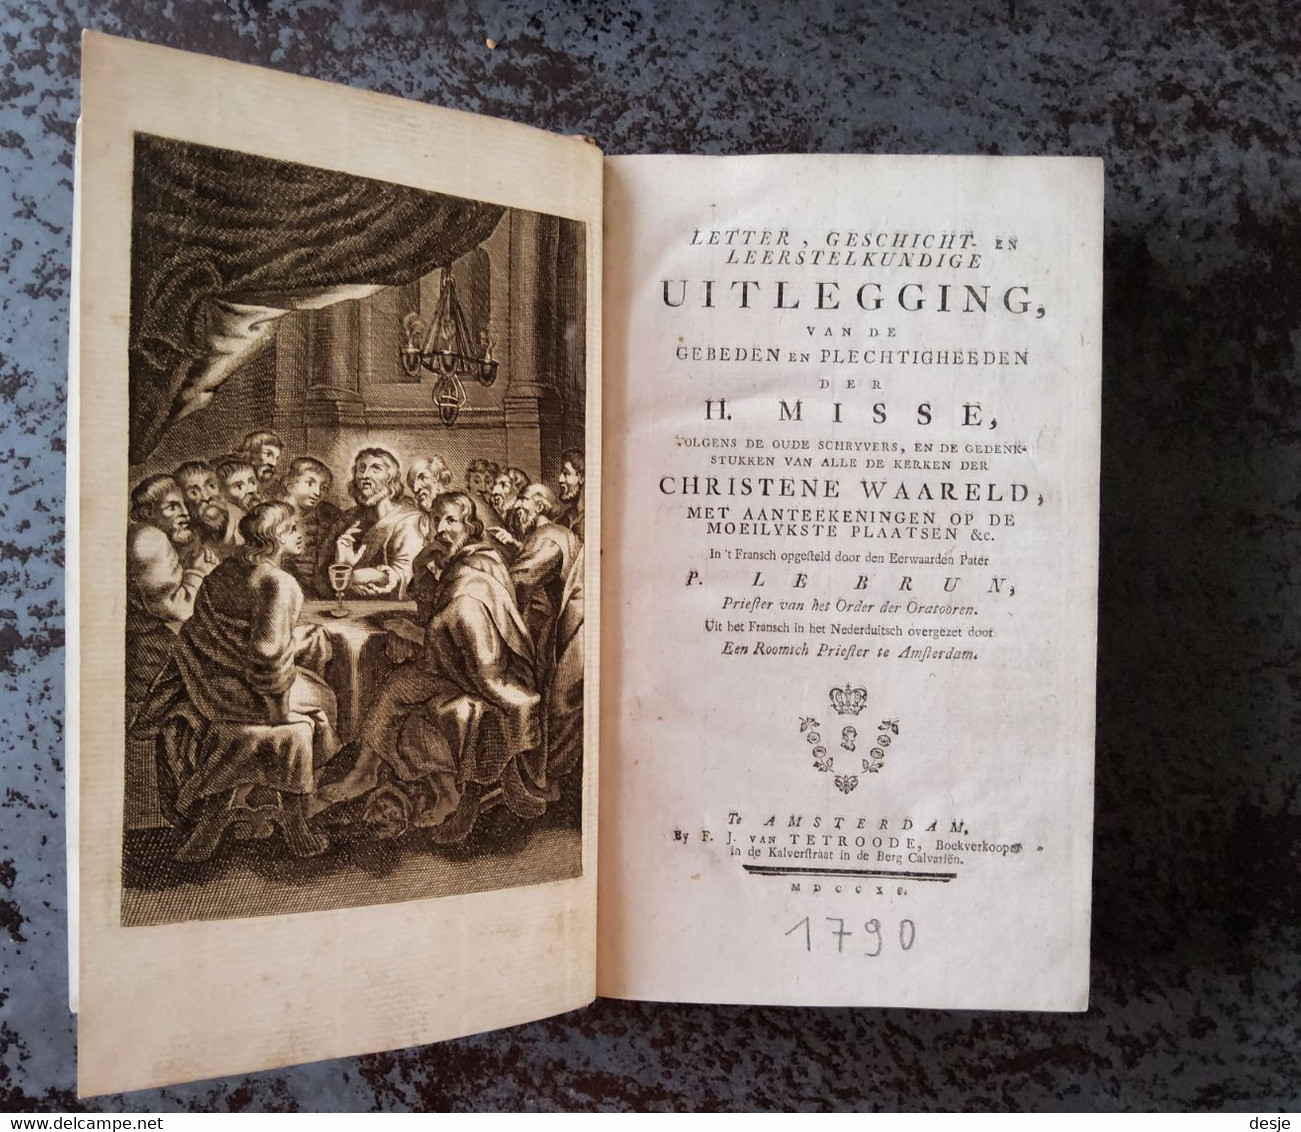 Uitlegging Van De Gebeden En Plechtigheden Der H. Misse Door P. Le Brun, 733 Blz., Amsterdam, 1790 - Oud